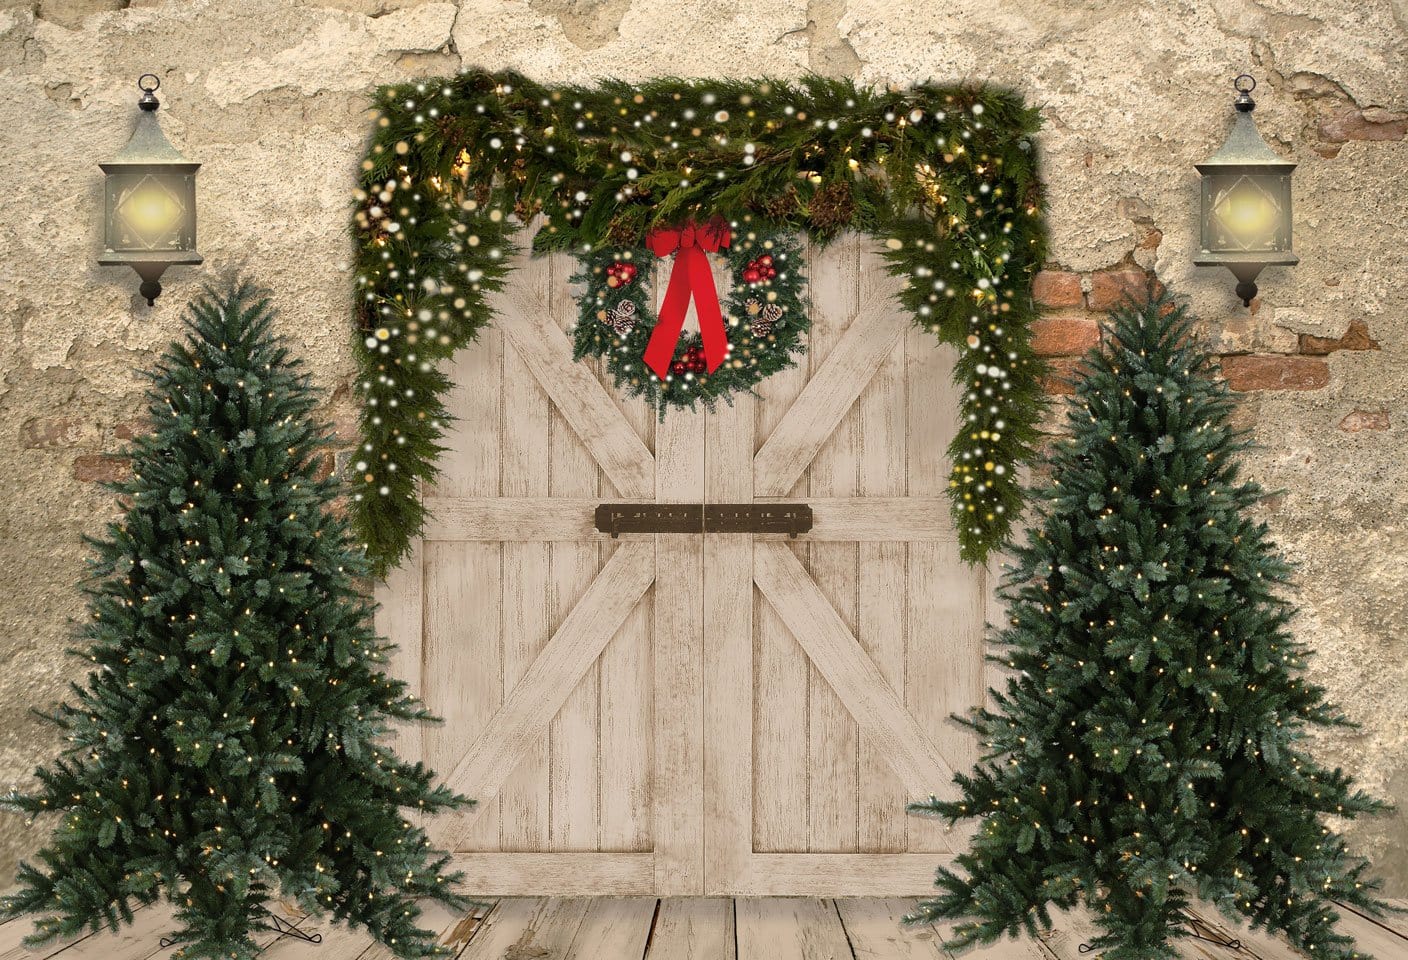 Kate Weihnachten Fleece Hintergrund Ziegelwand Tür & Xmas B?ume Entworfen von JS Photography